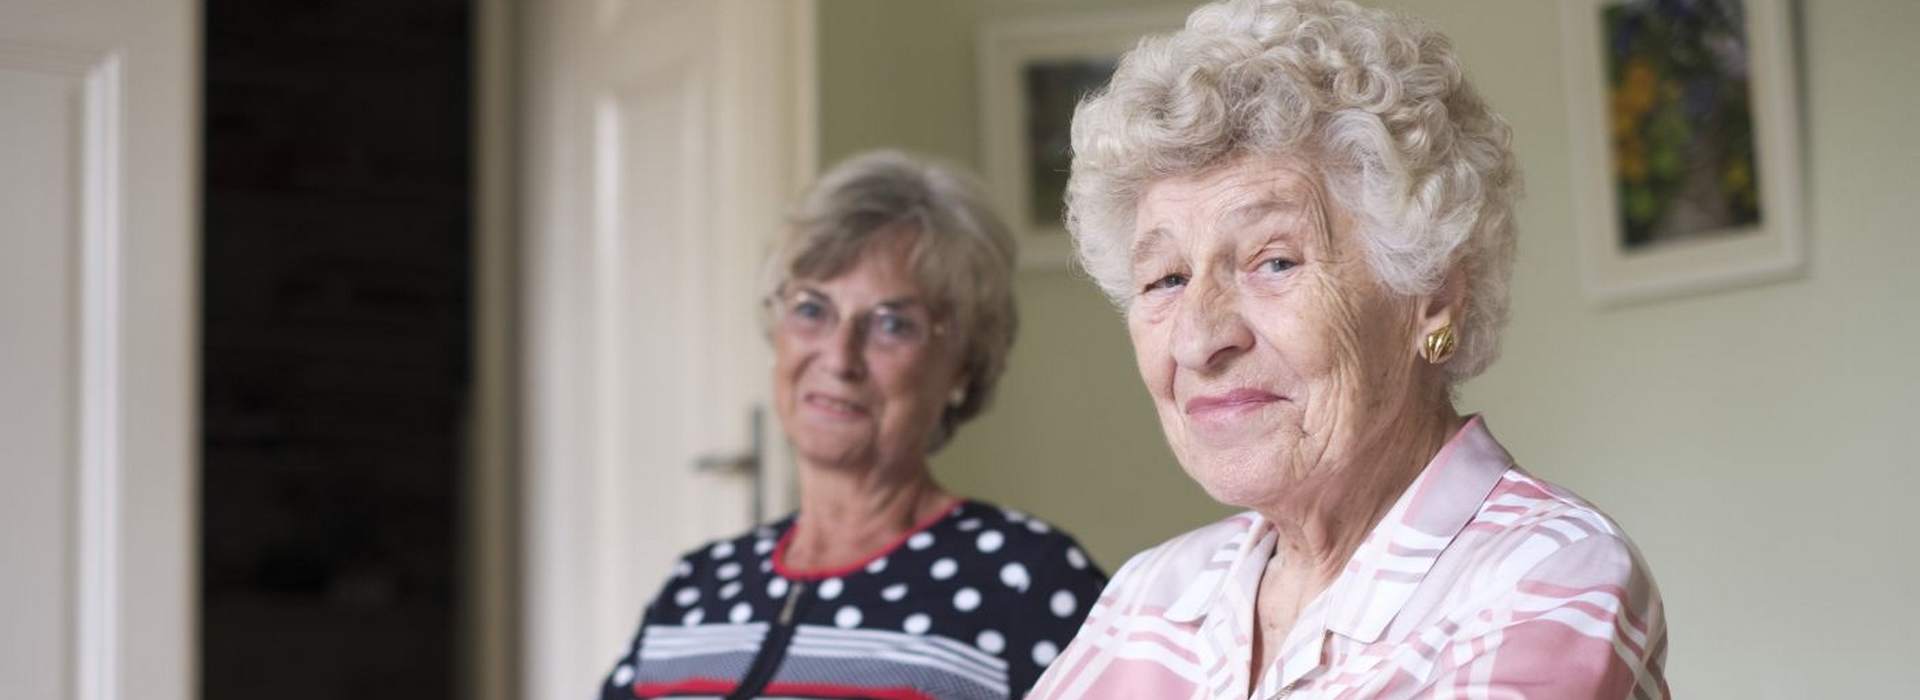 Pflege bei der AWO Kiel. Das Symbolbild zeigt zwei ältere Damen, die selbstbewusst in die Kamera schauen.